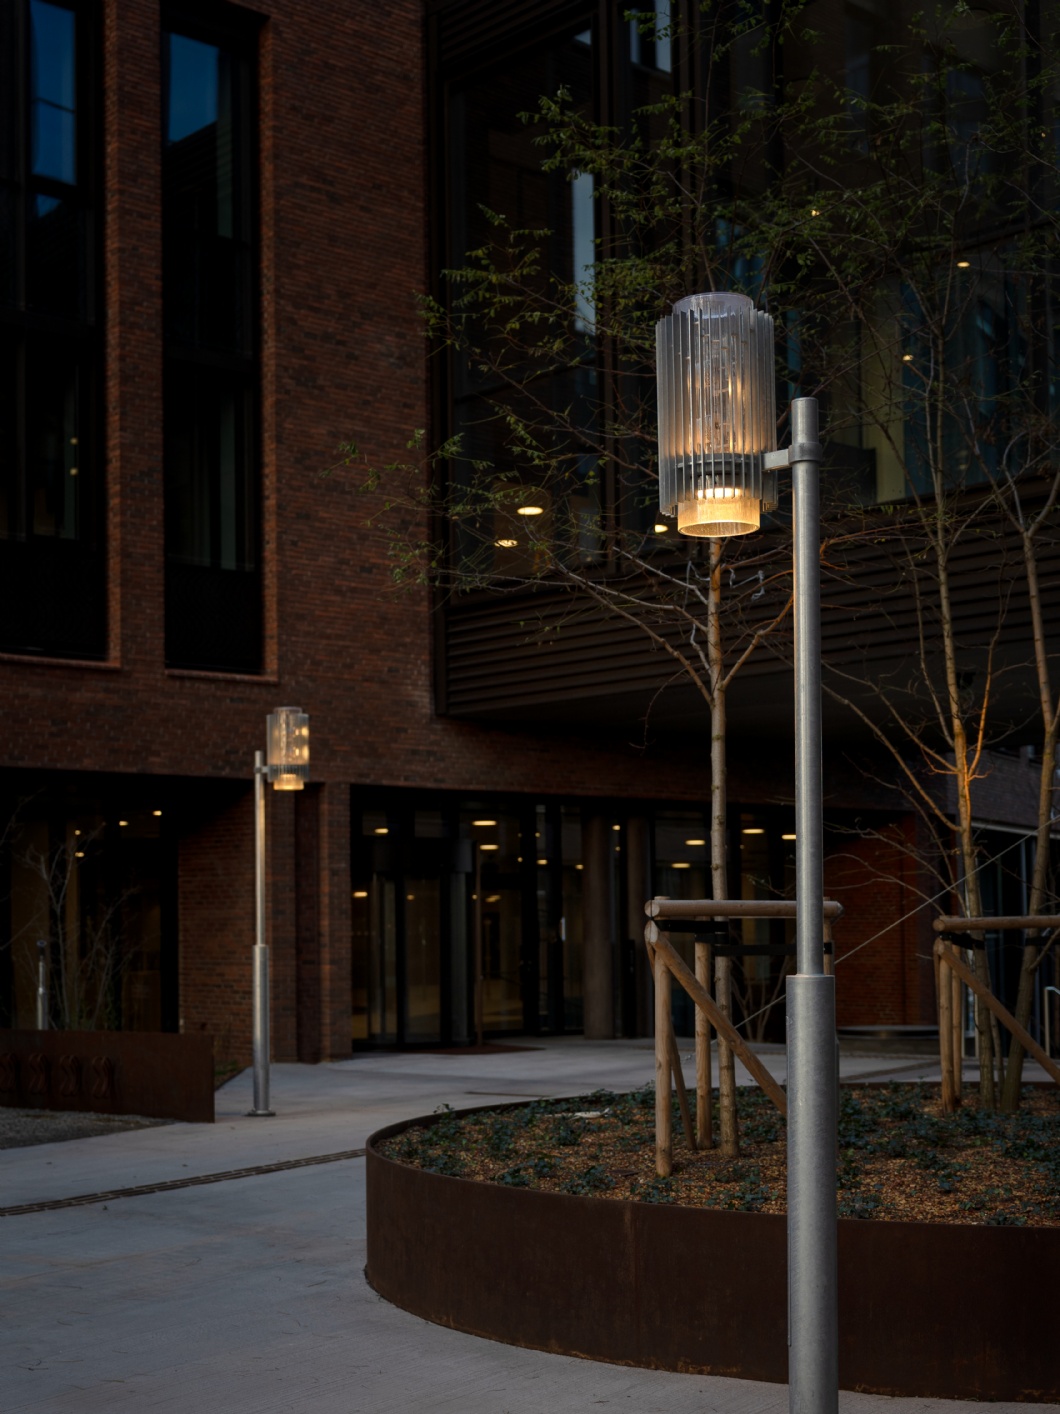 Illuminazione individuale per il quartiere vivente – Postbyen, Copenaghen 6